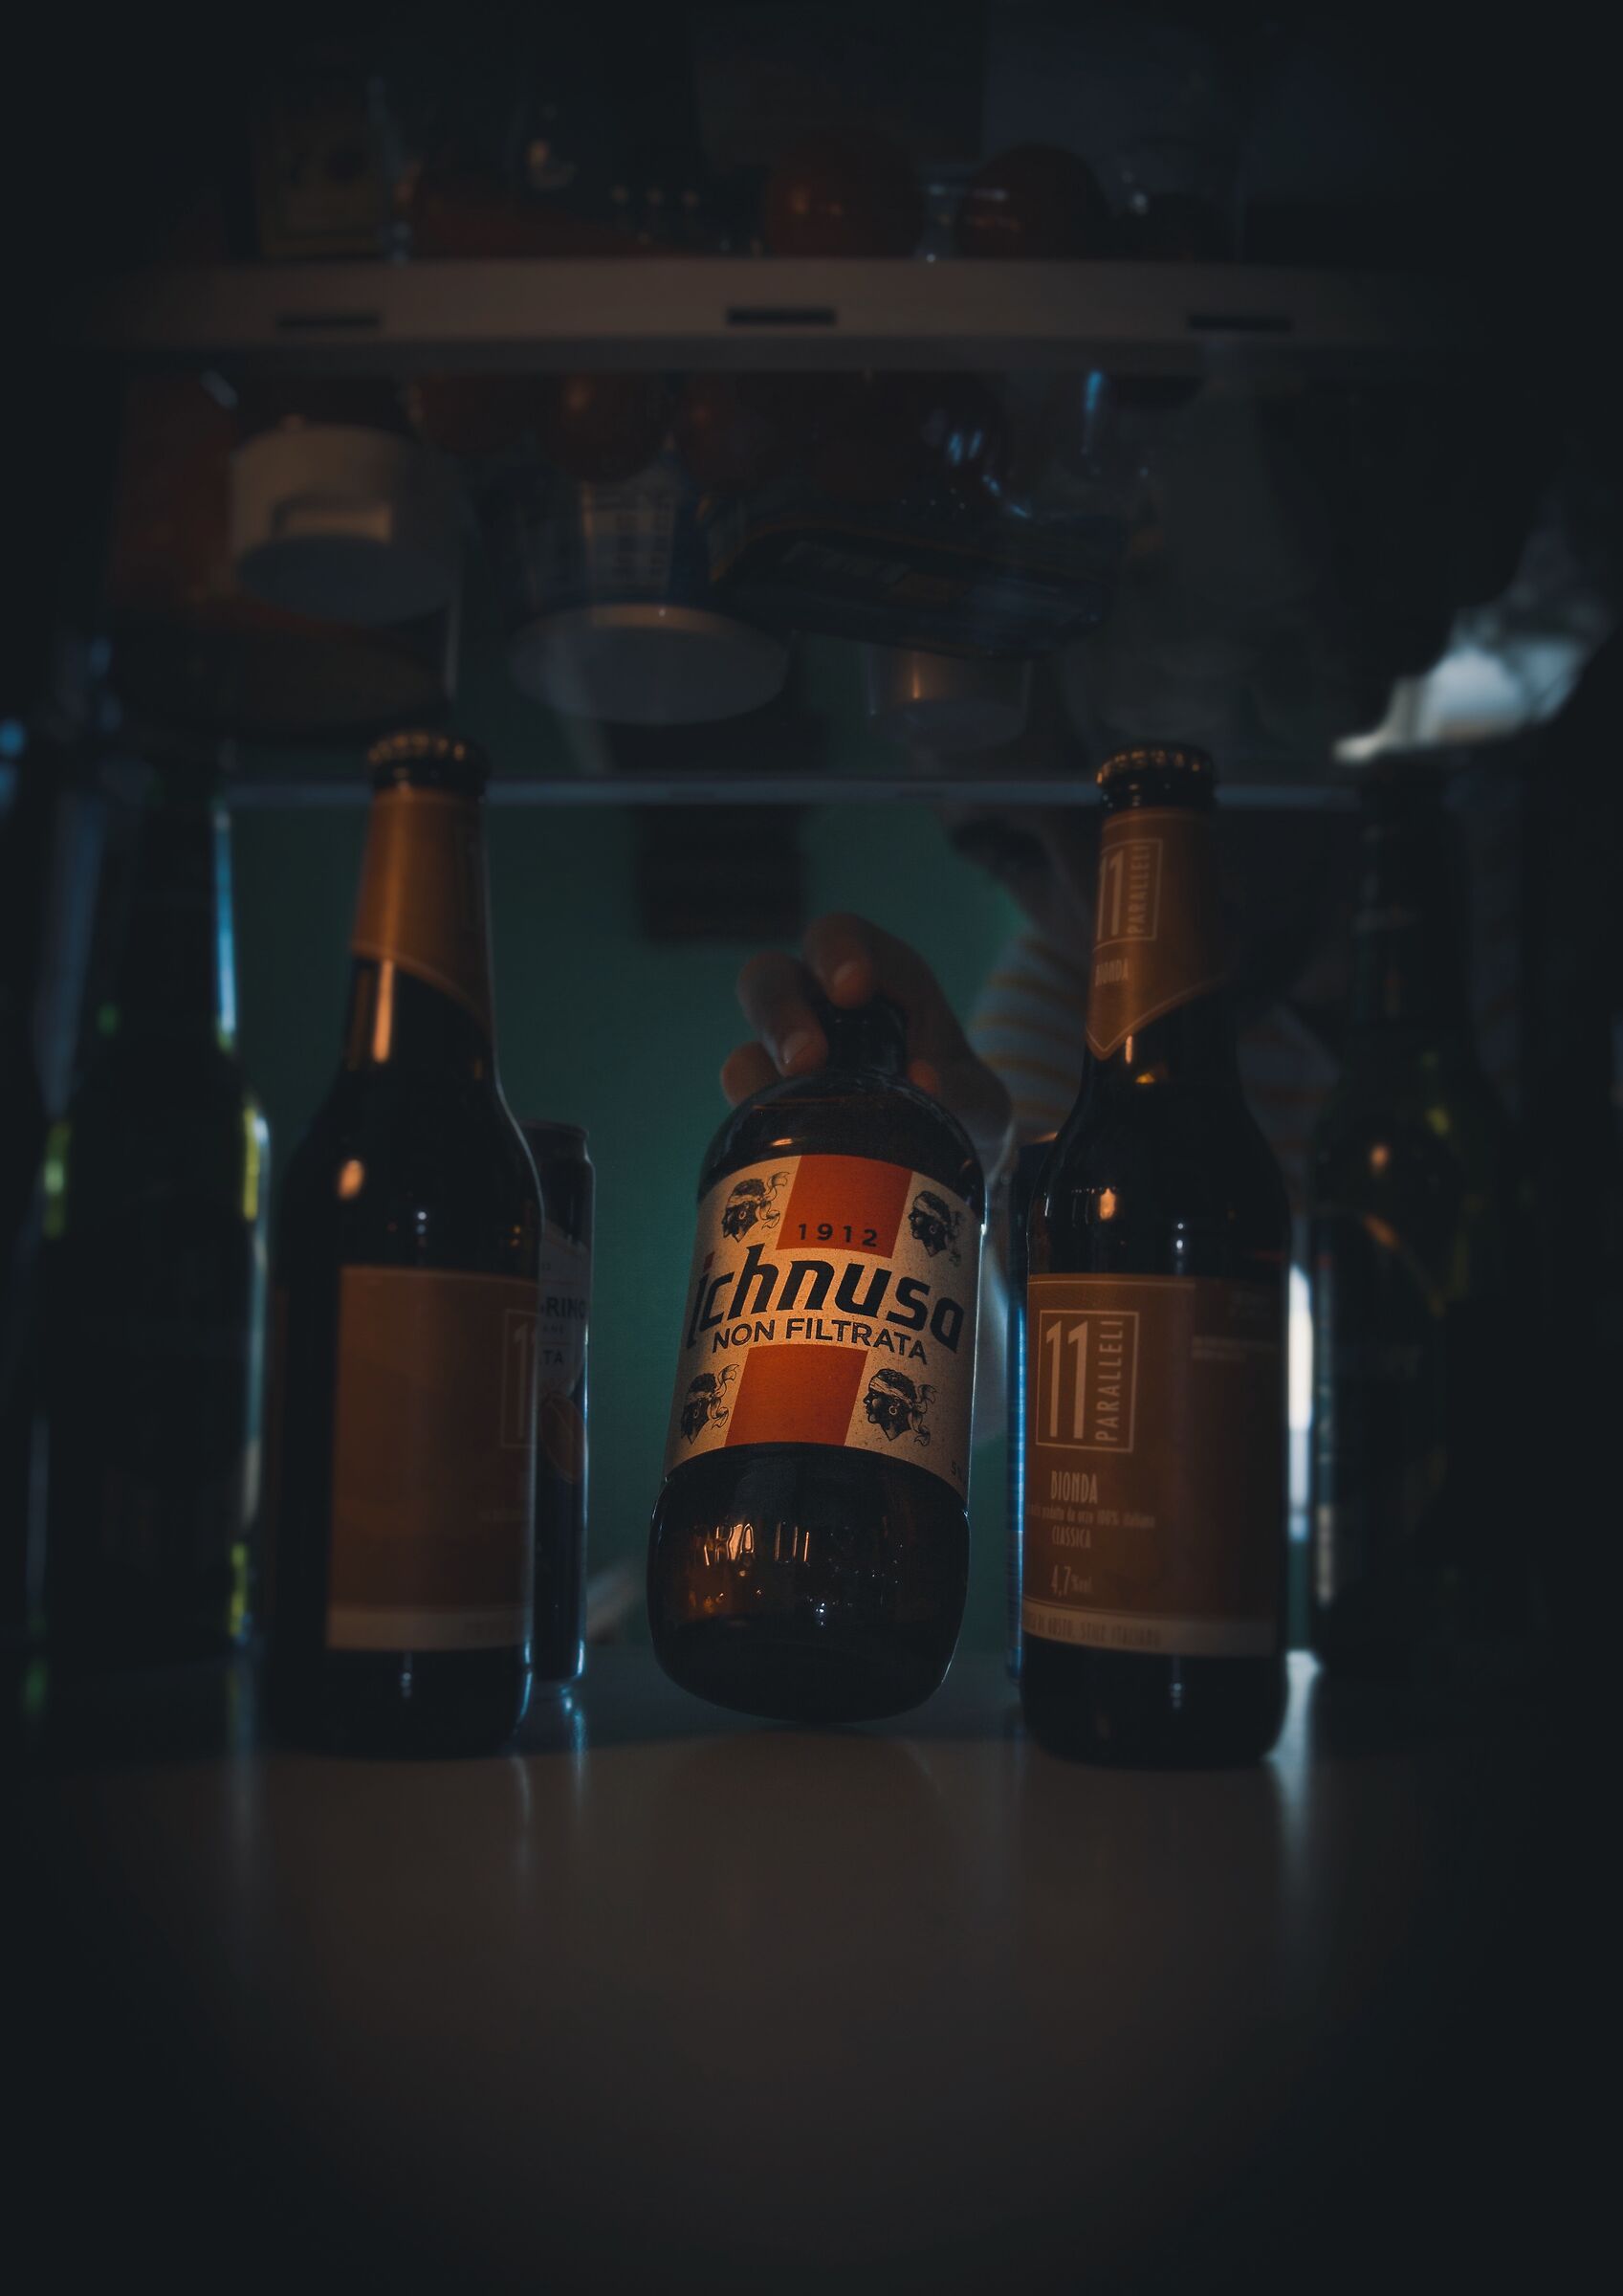 Beer fridge...